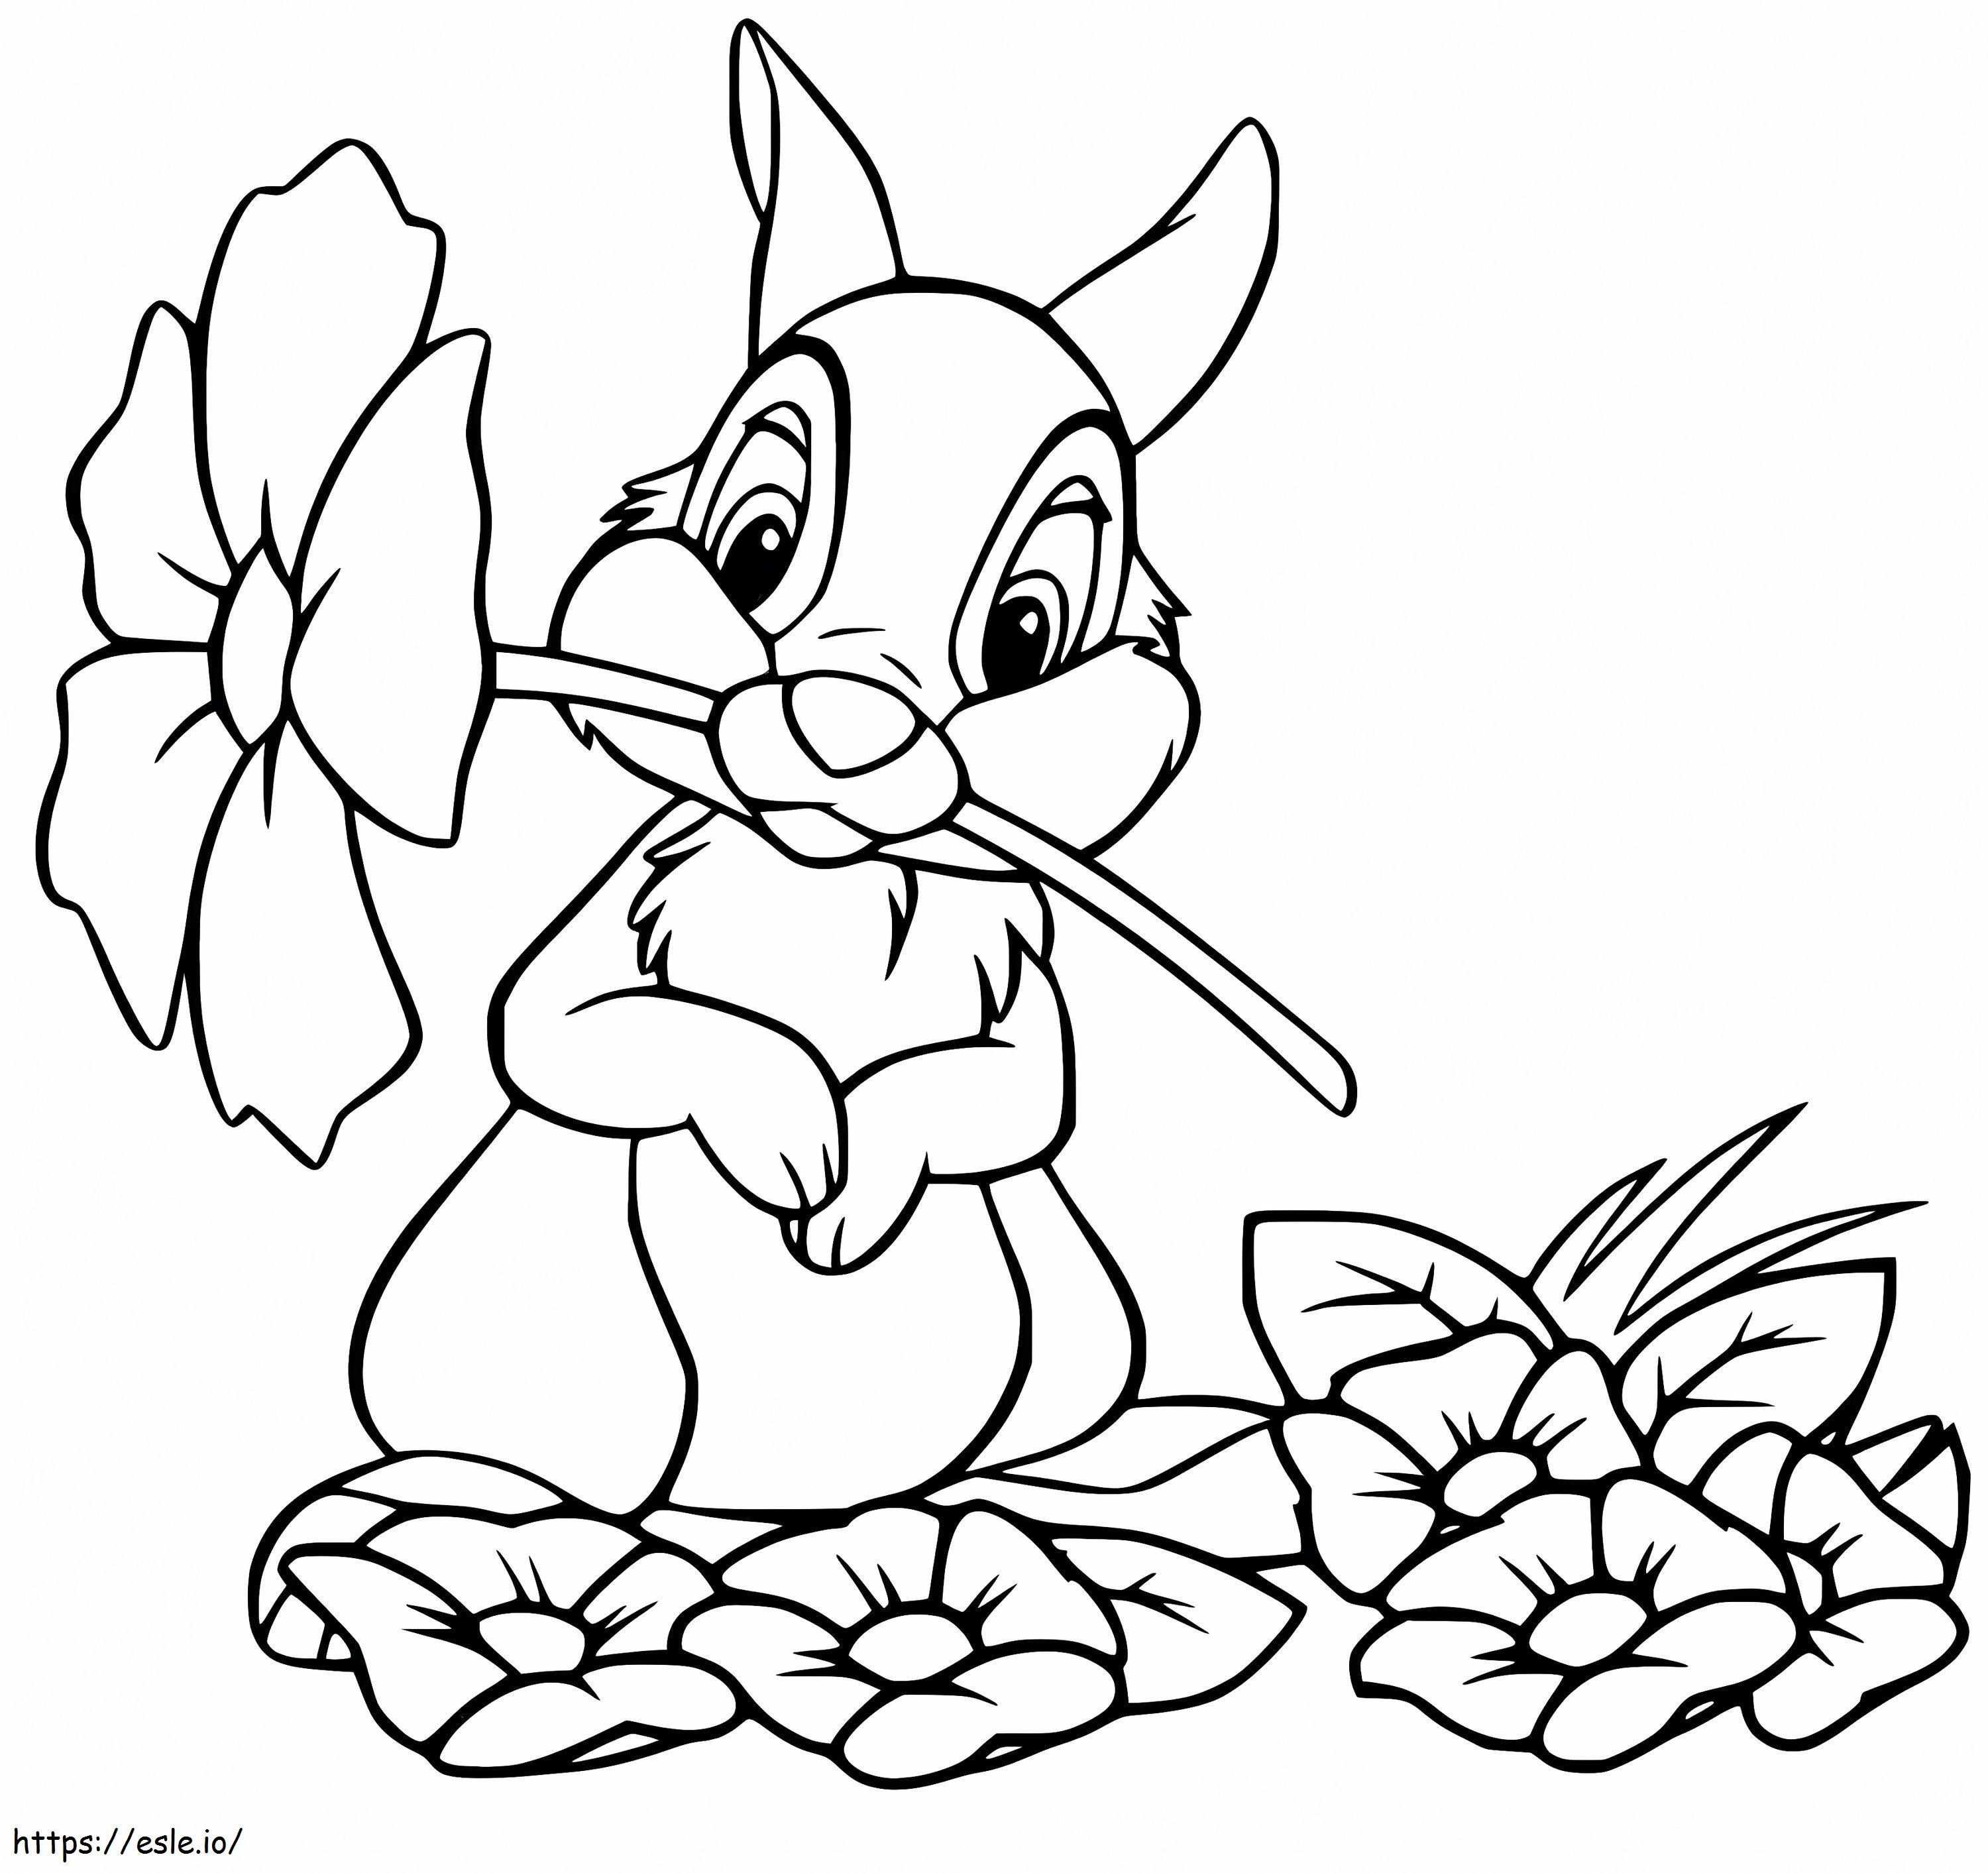 Thumper Trzyma Kwiat kolorowanka